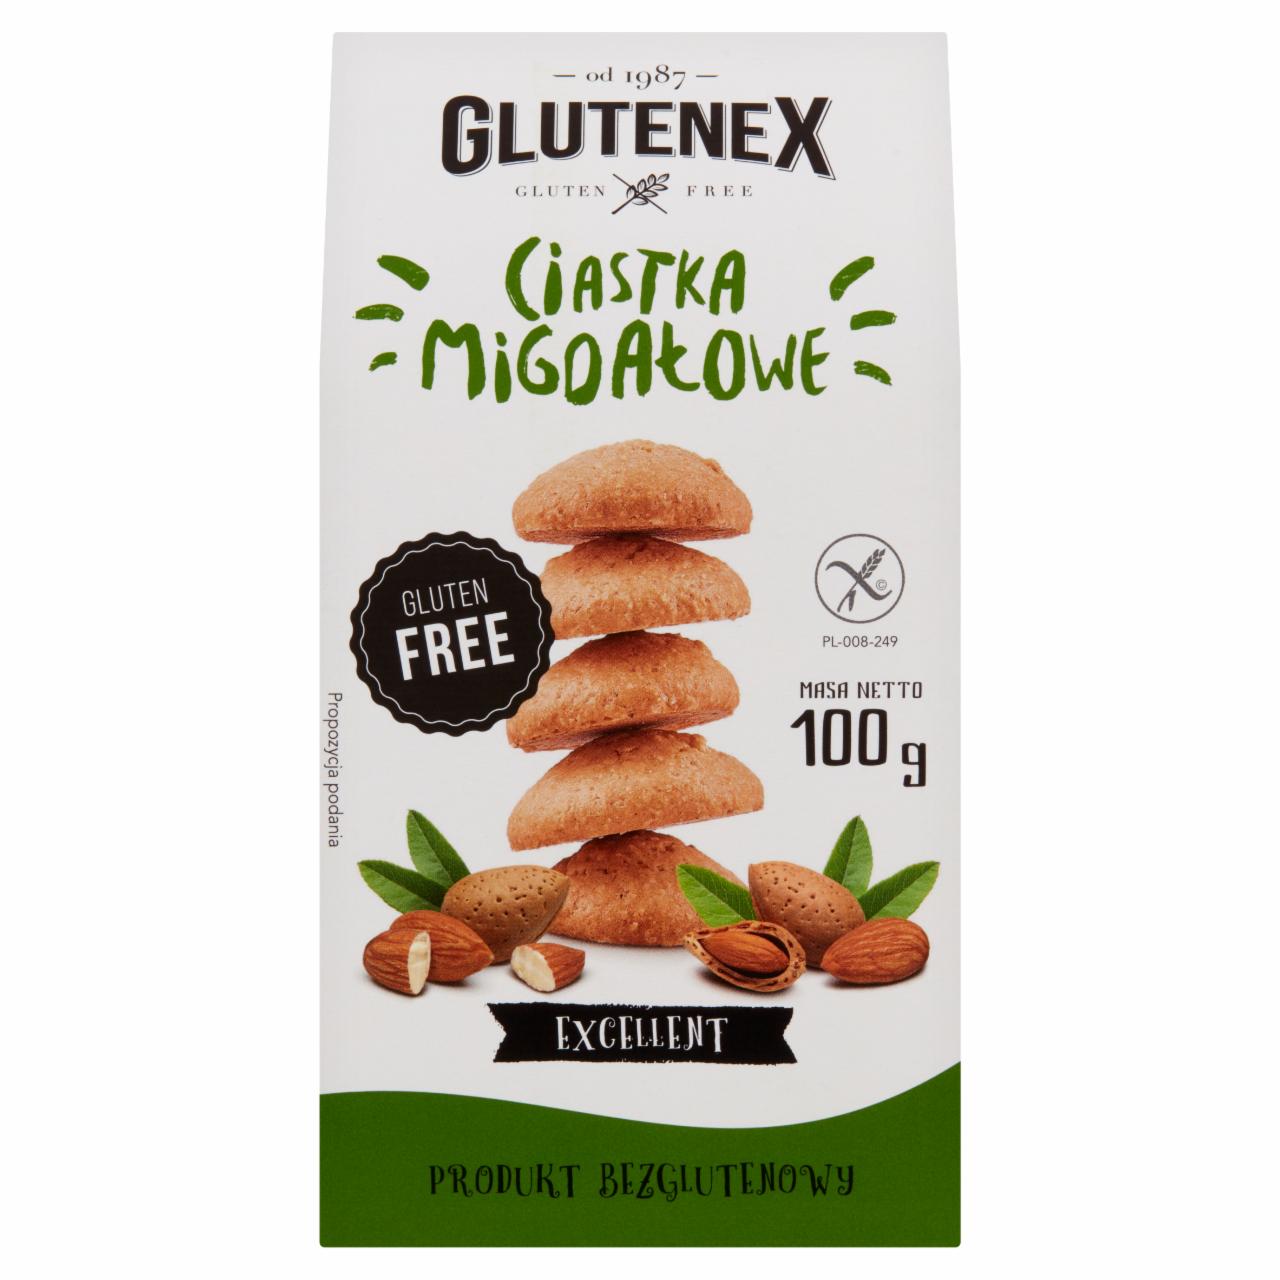 Zdjęcia - Glutenex Ciastka migdałowe 100 g